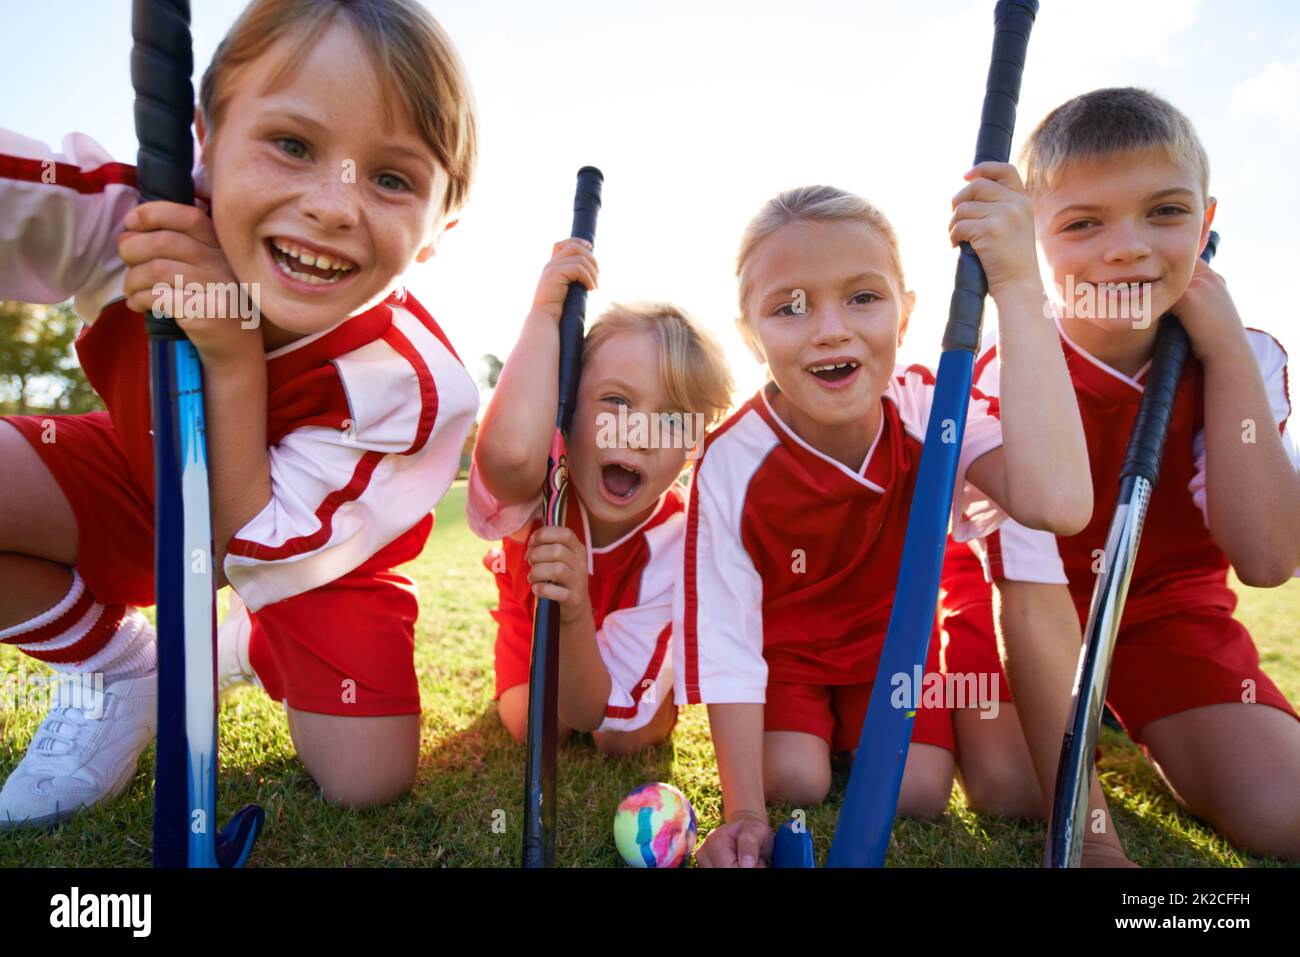 Sie haben einen starken Teamgeist. Porträt glücklicher Kinder, die Hockey spielen. Stockfoto